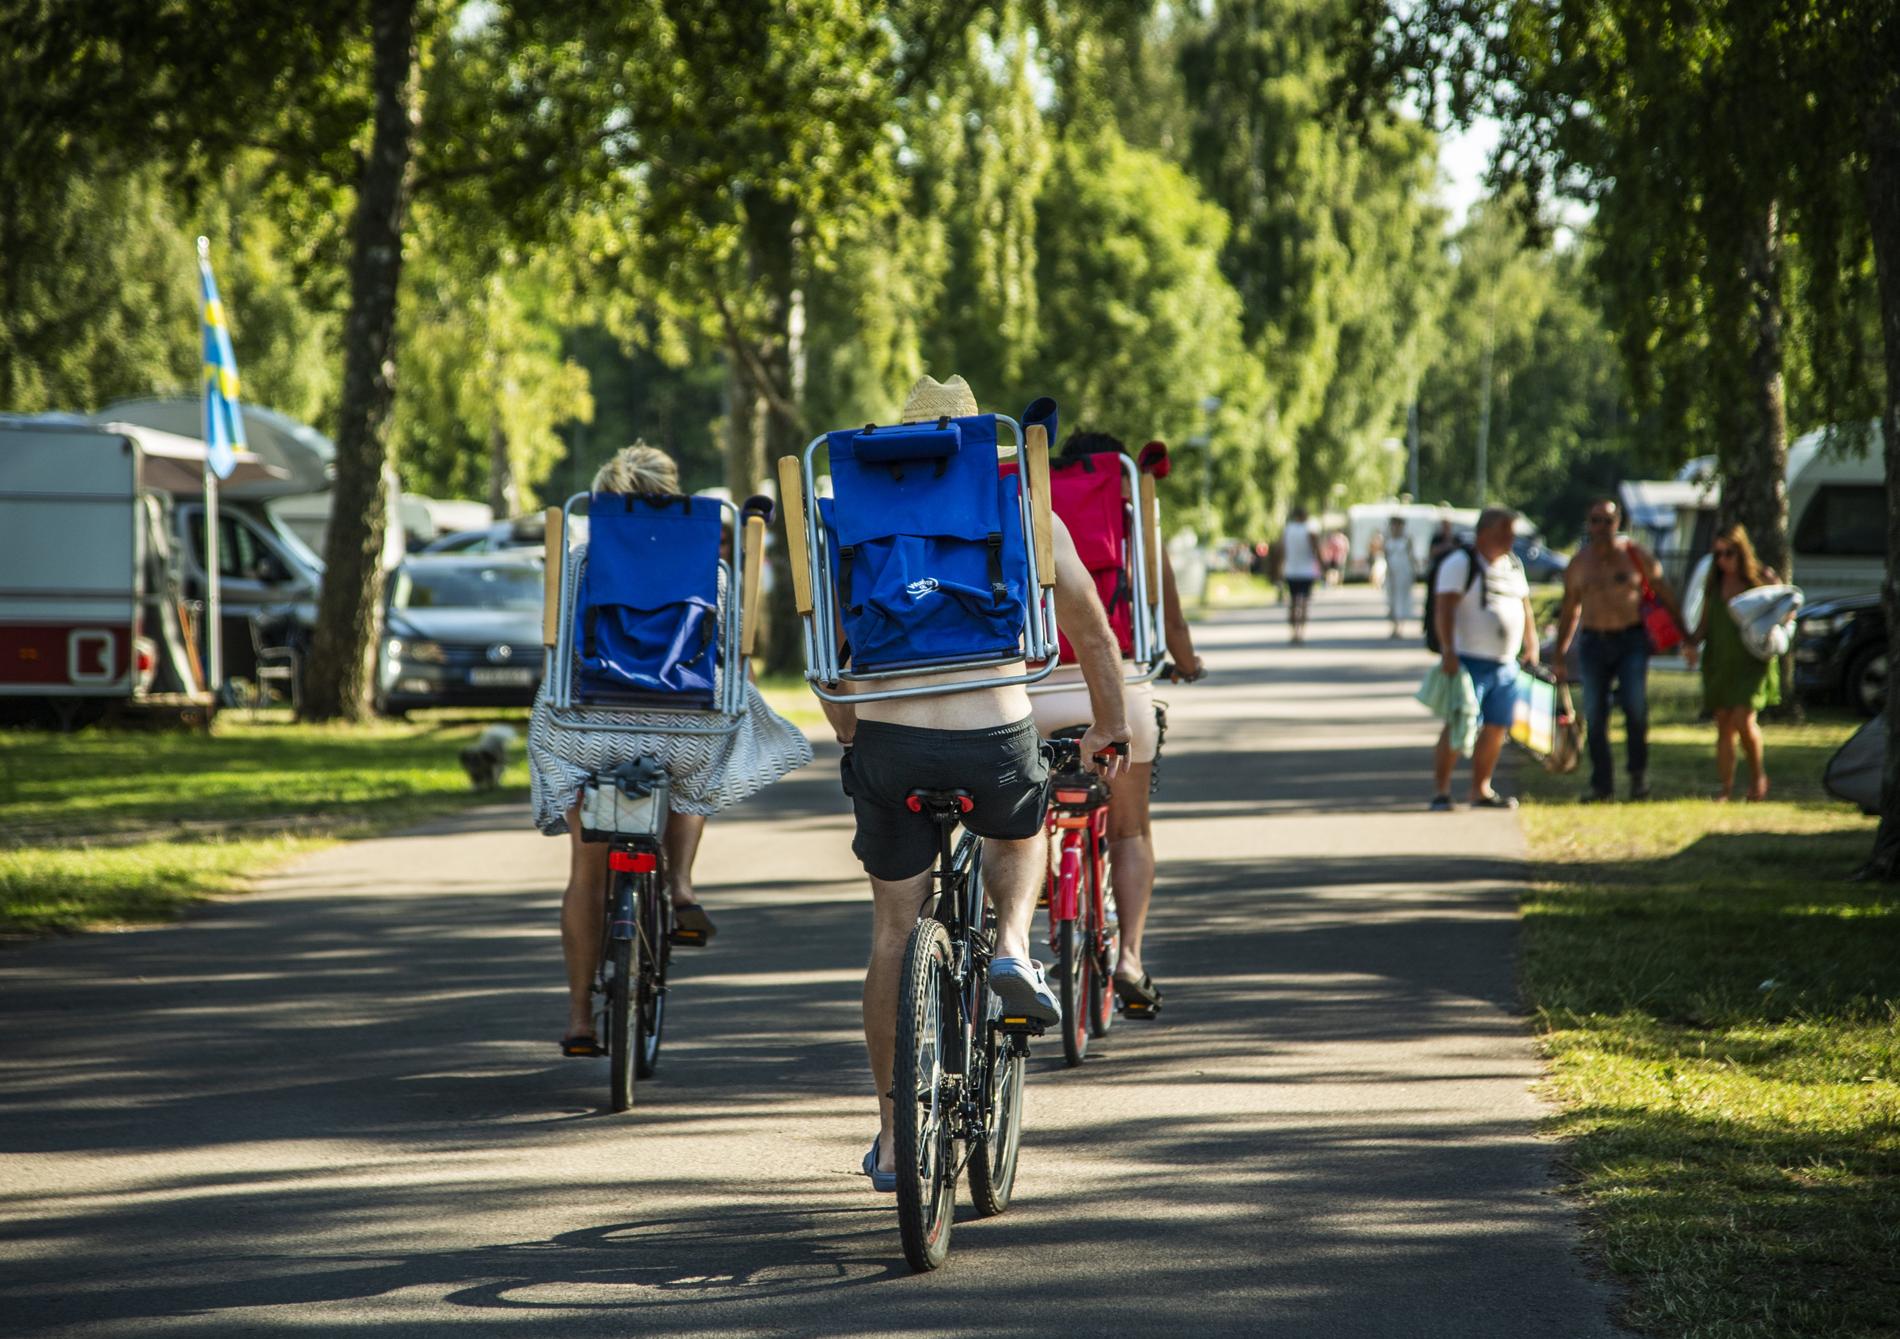 Cykelsemester är både ett prisvärt och miljövänligt alternativ i sommar.